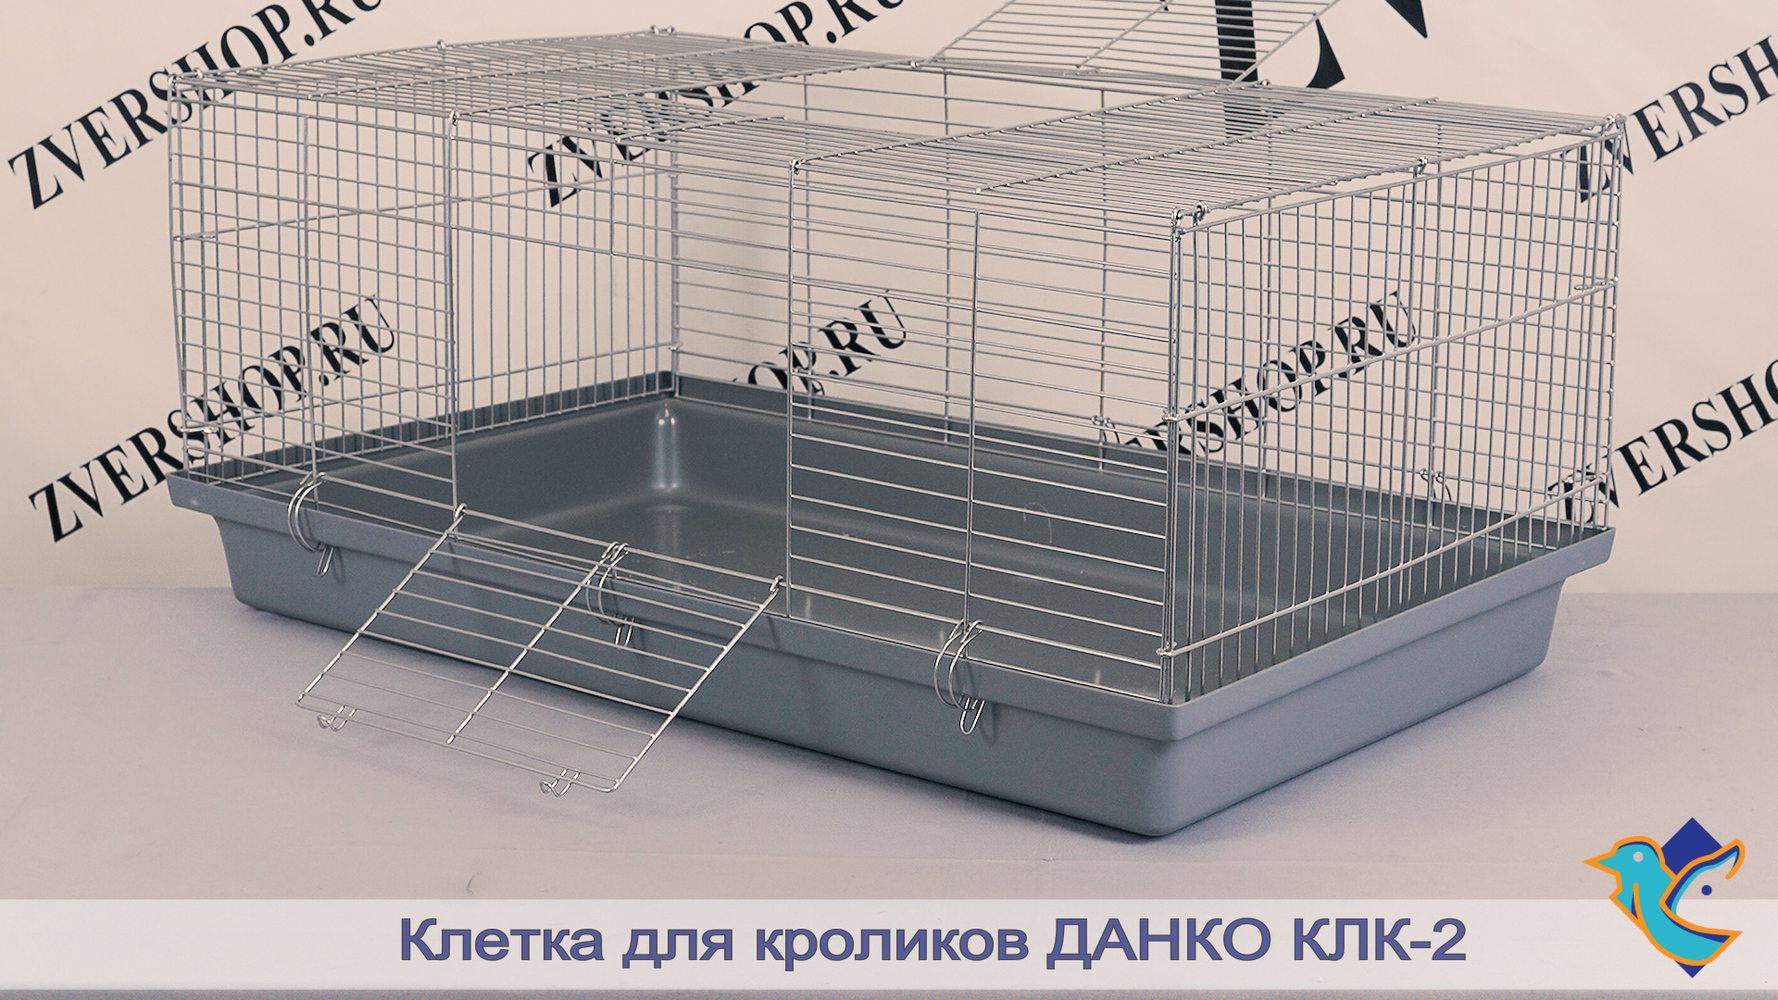 Фото Клетка КлК-2 для кроликов на пластиковом поддоне Данко, разборная, в коробке  